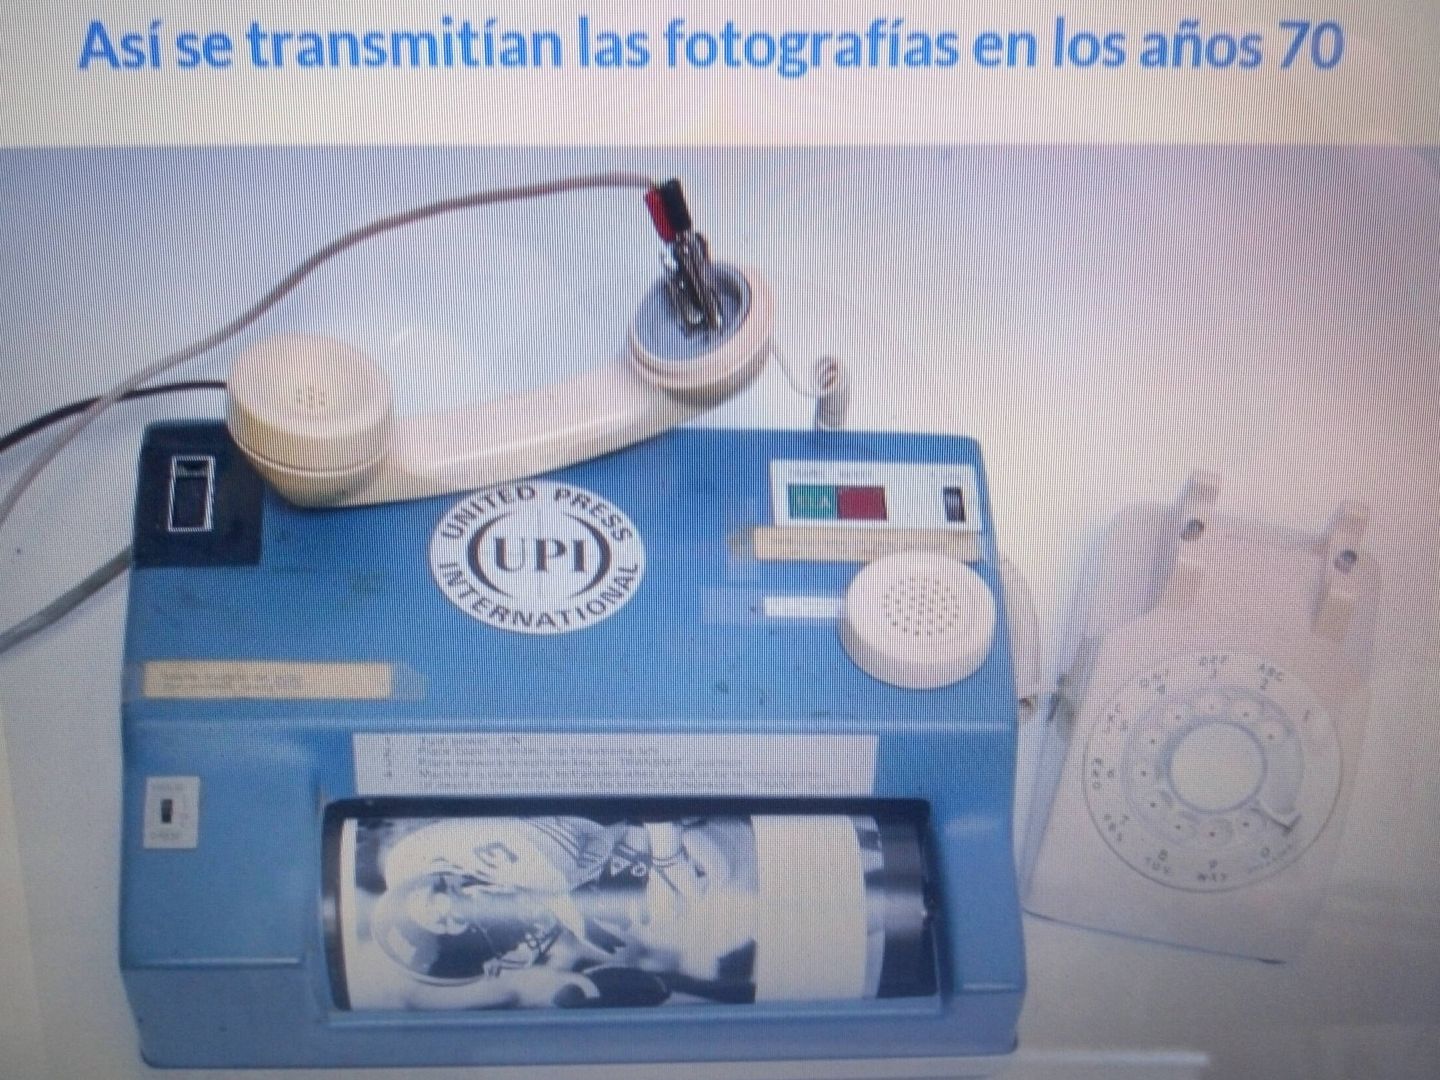 El sistema para enviar una fotografía usando el teléfono en los 70 desde un circuito. (José María Rubio)